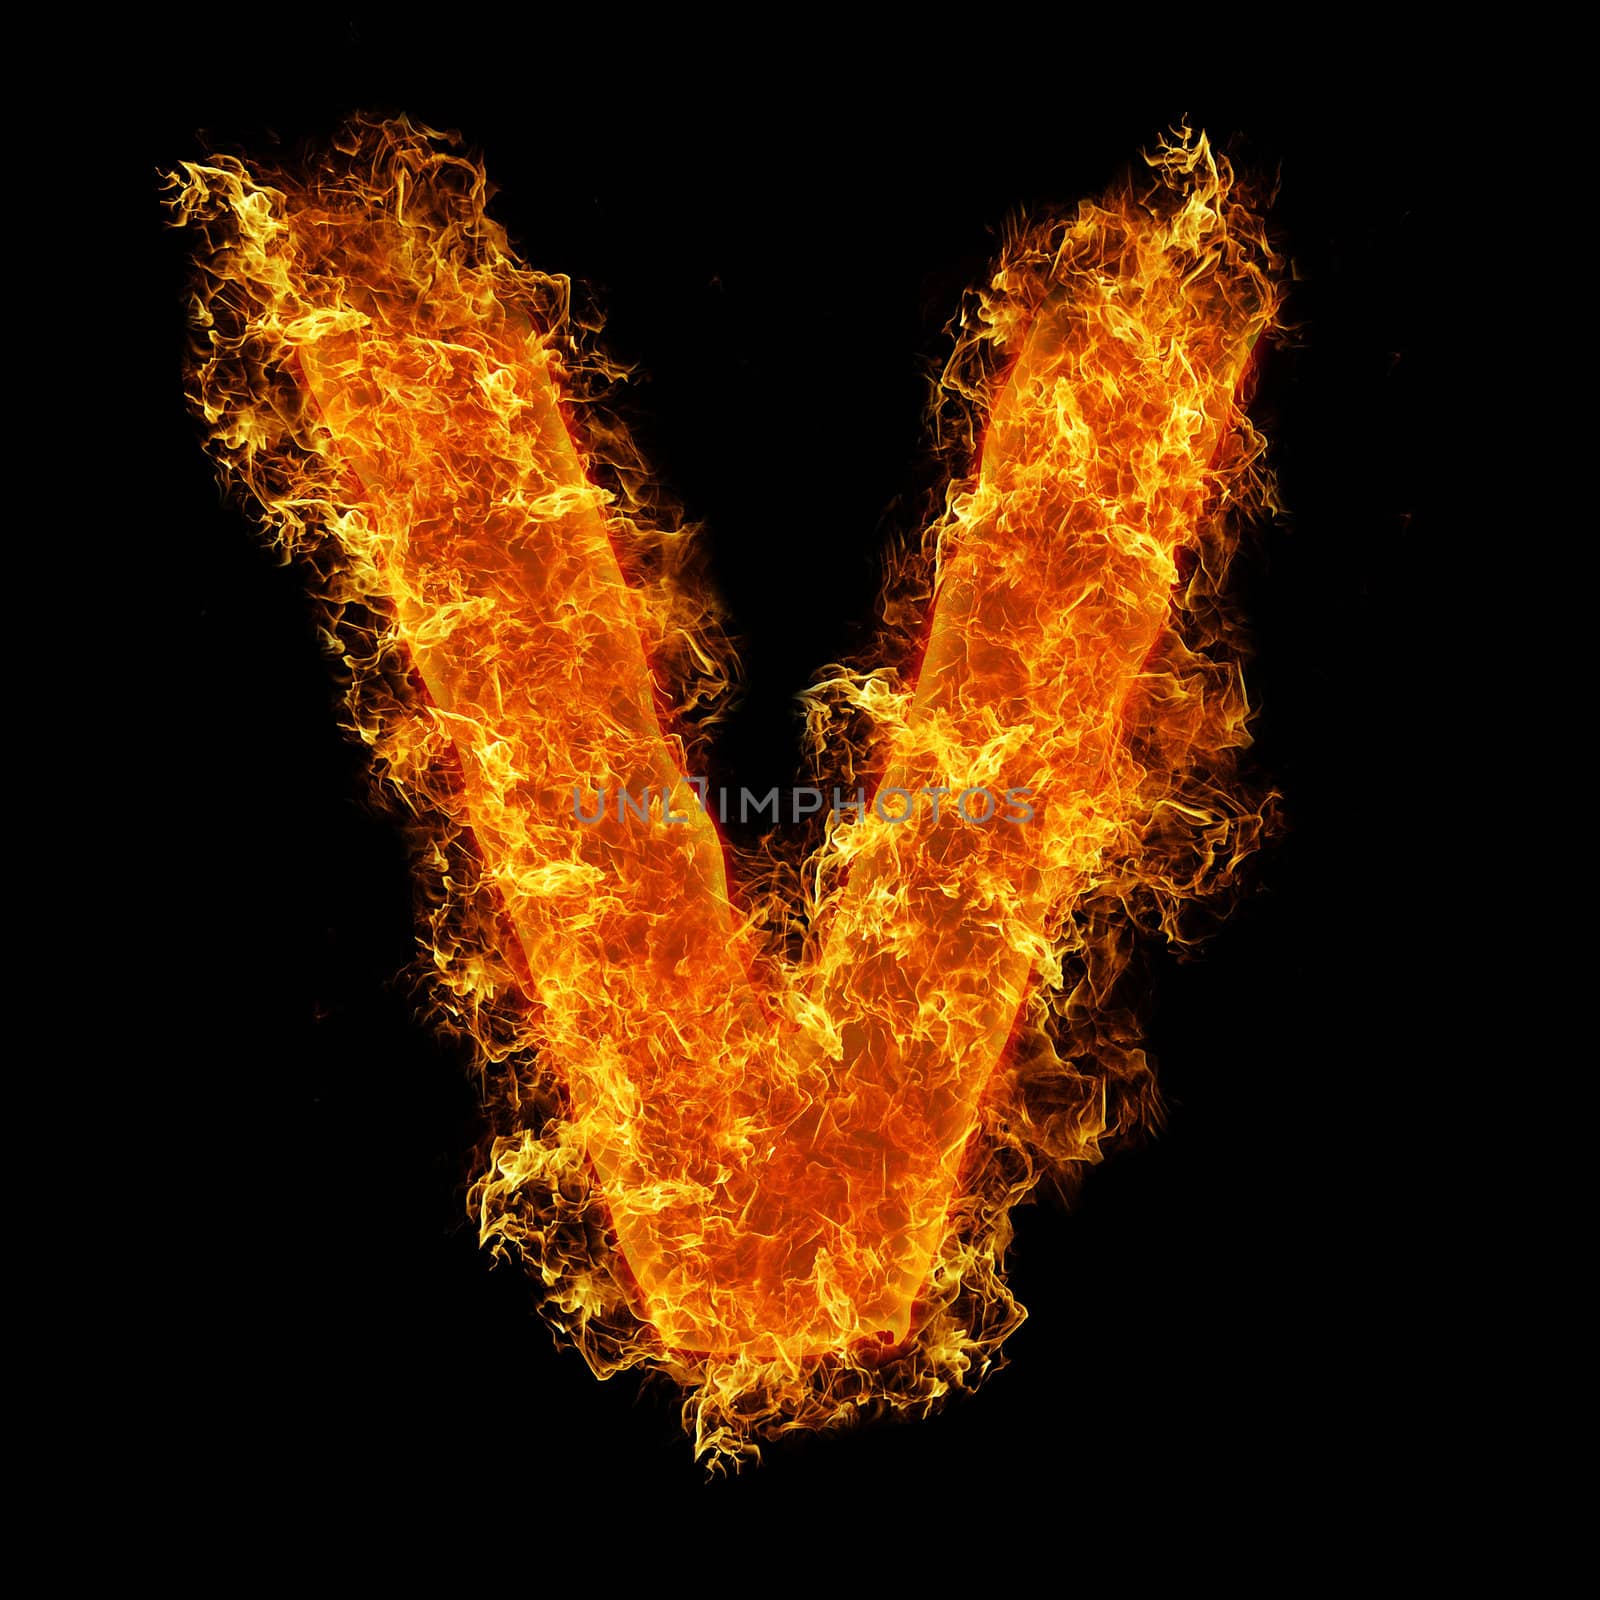 Fire letter V on a black background